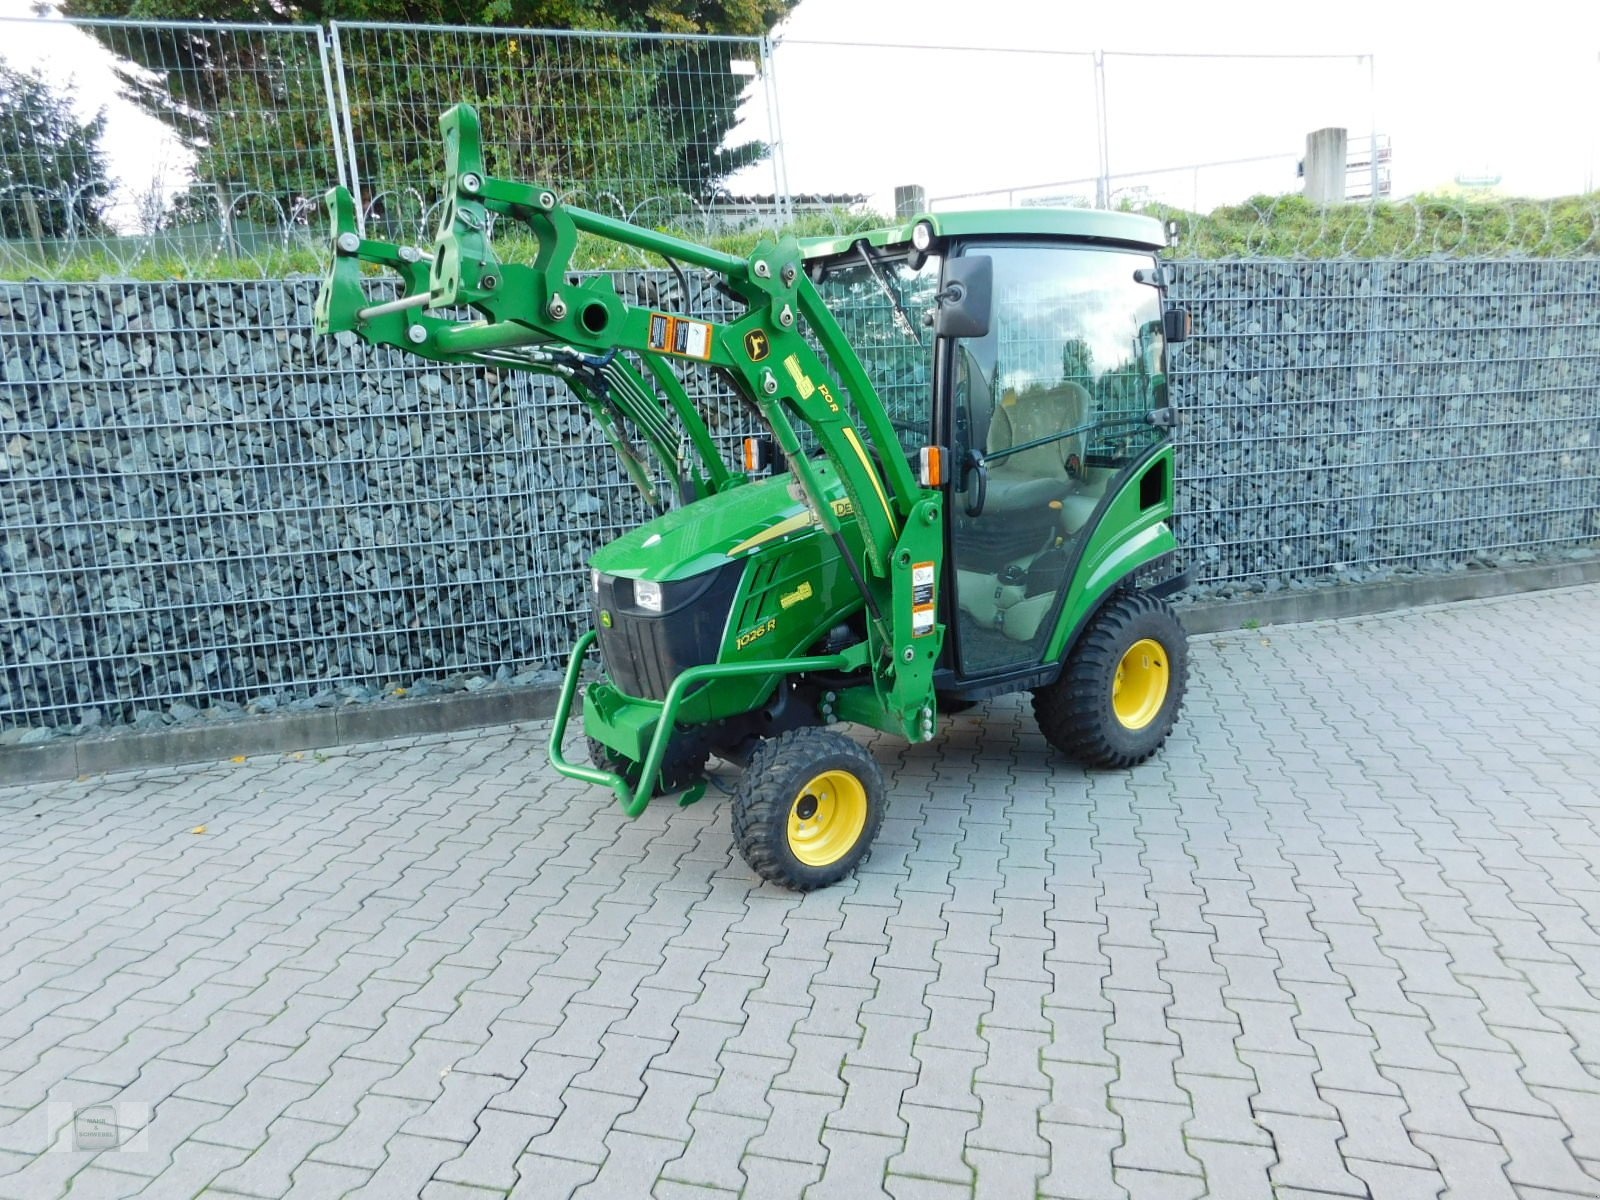 John Deere 1026 R tractor €25,202